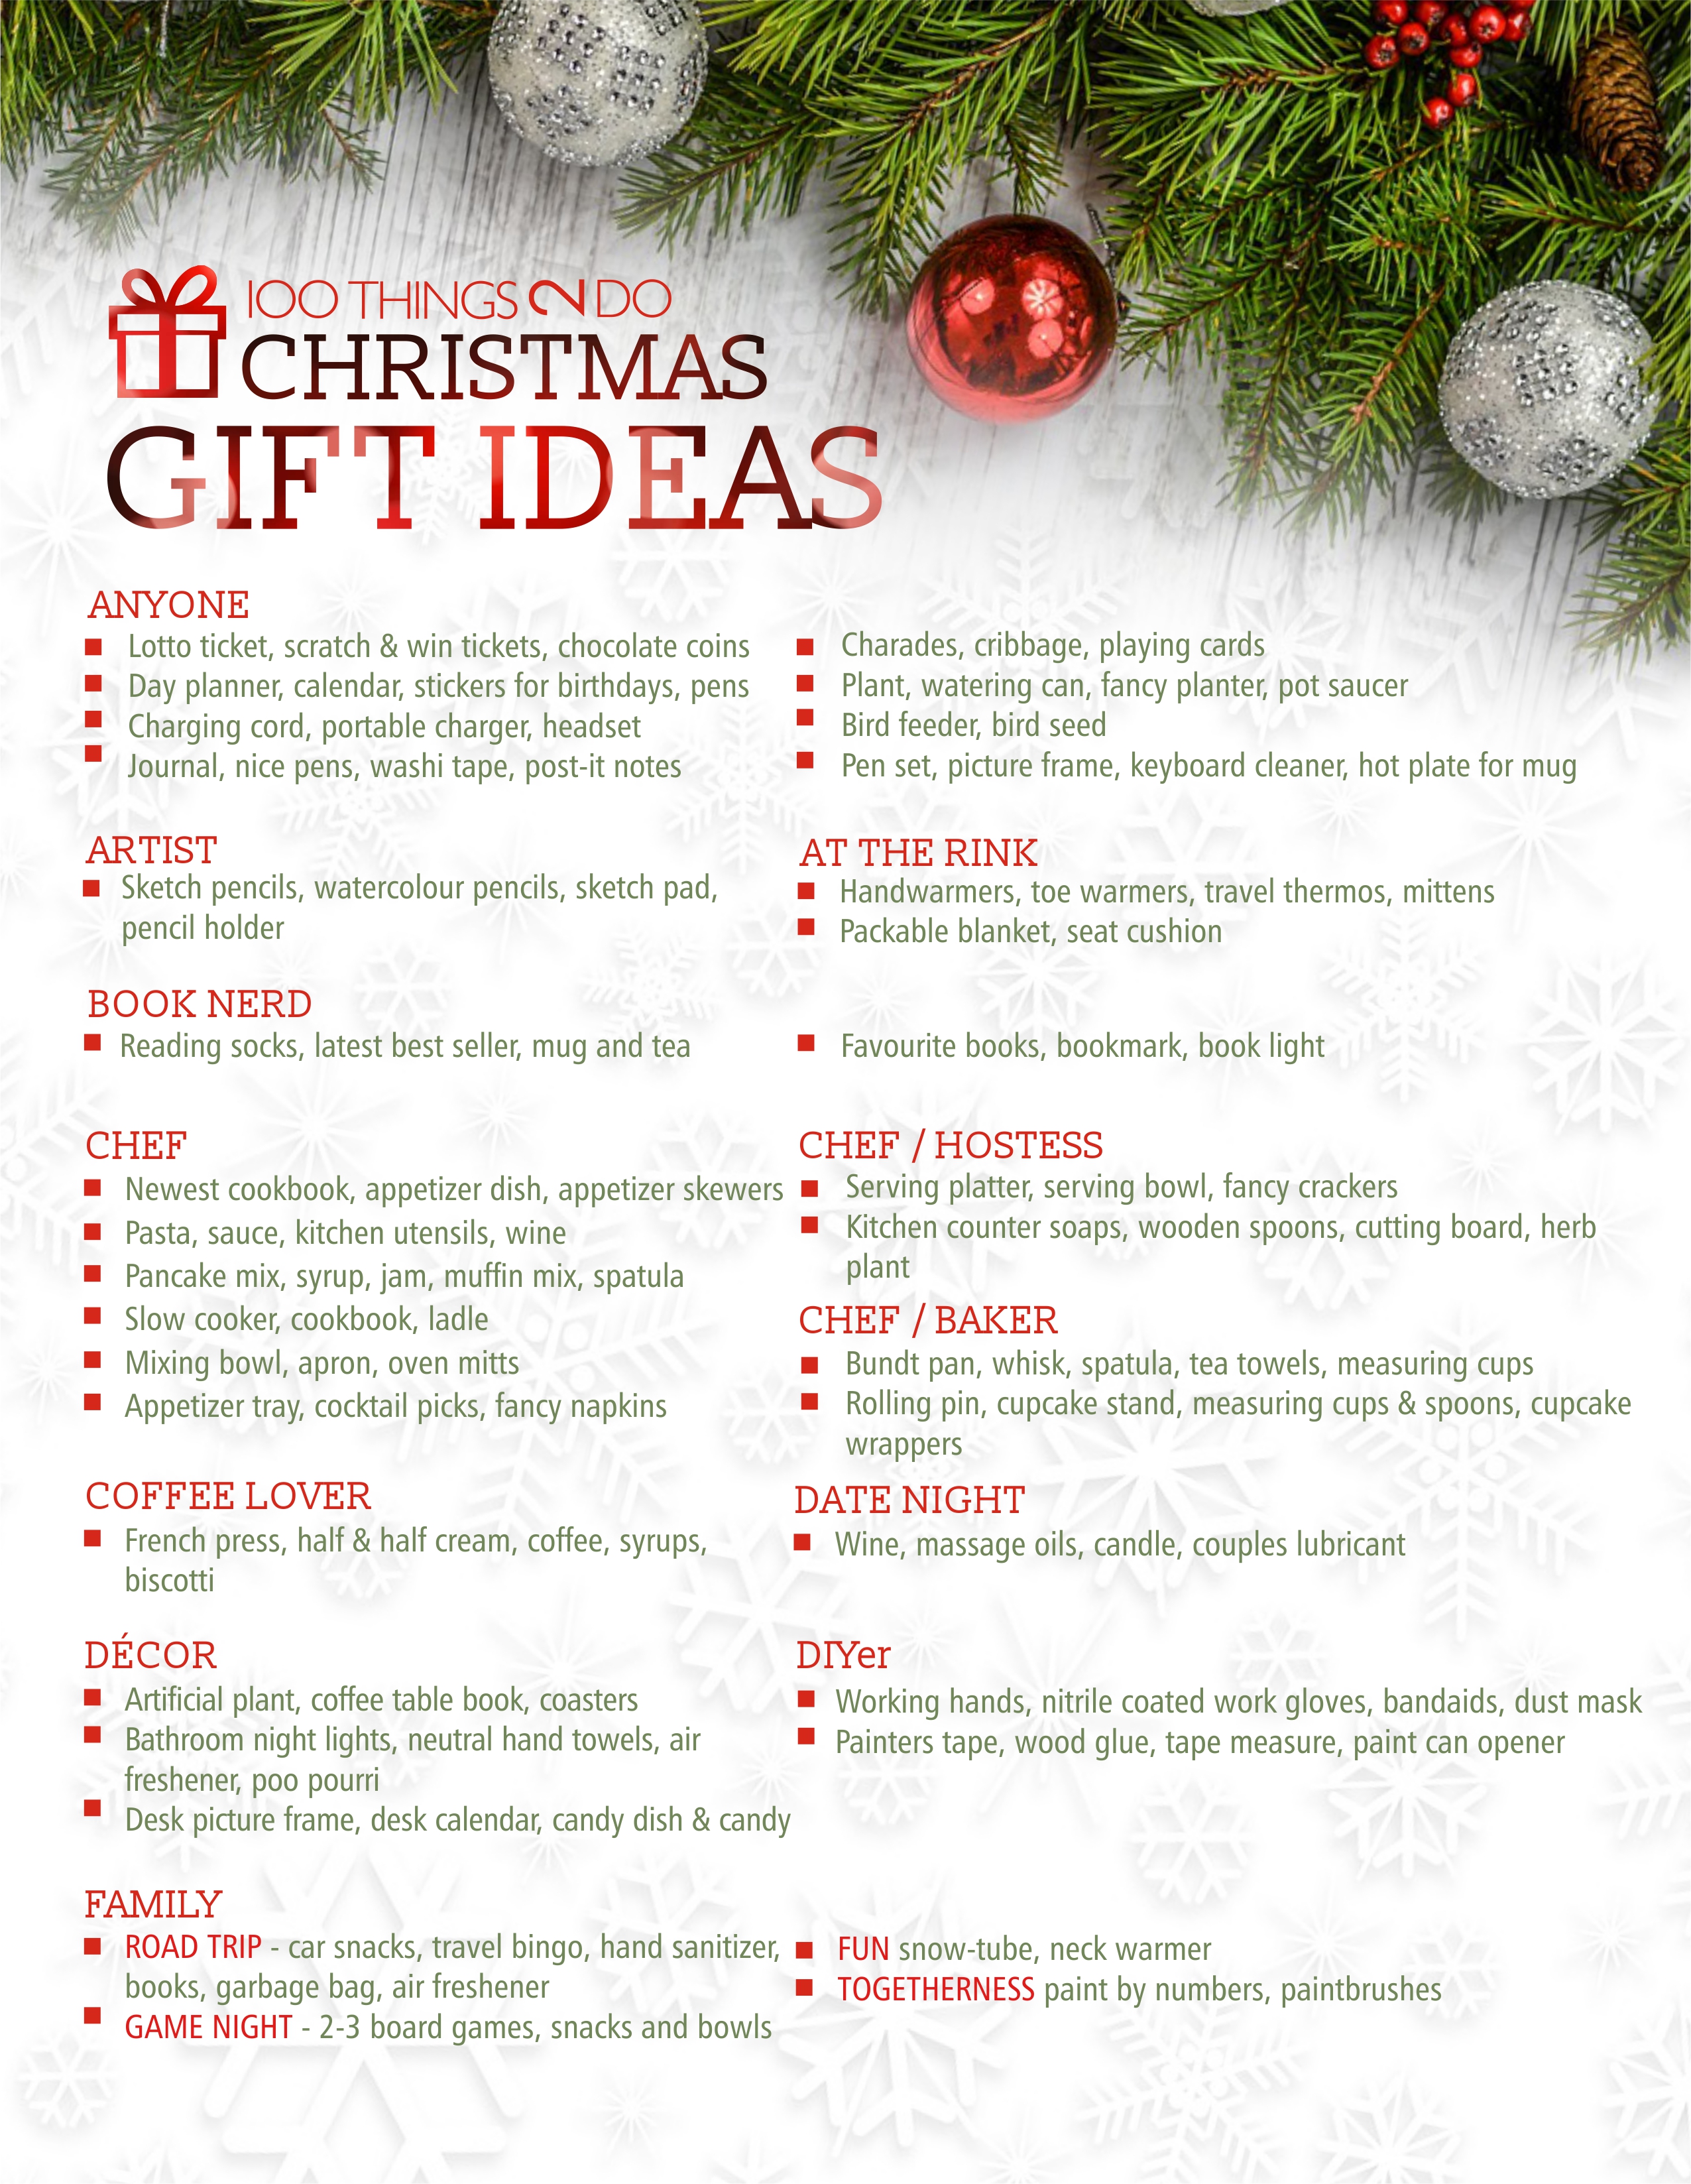 100 Christmas gift ideas, Christmas gift ideas, 100 gift ideas